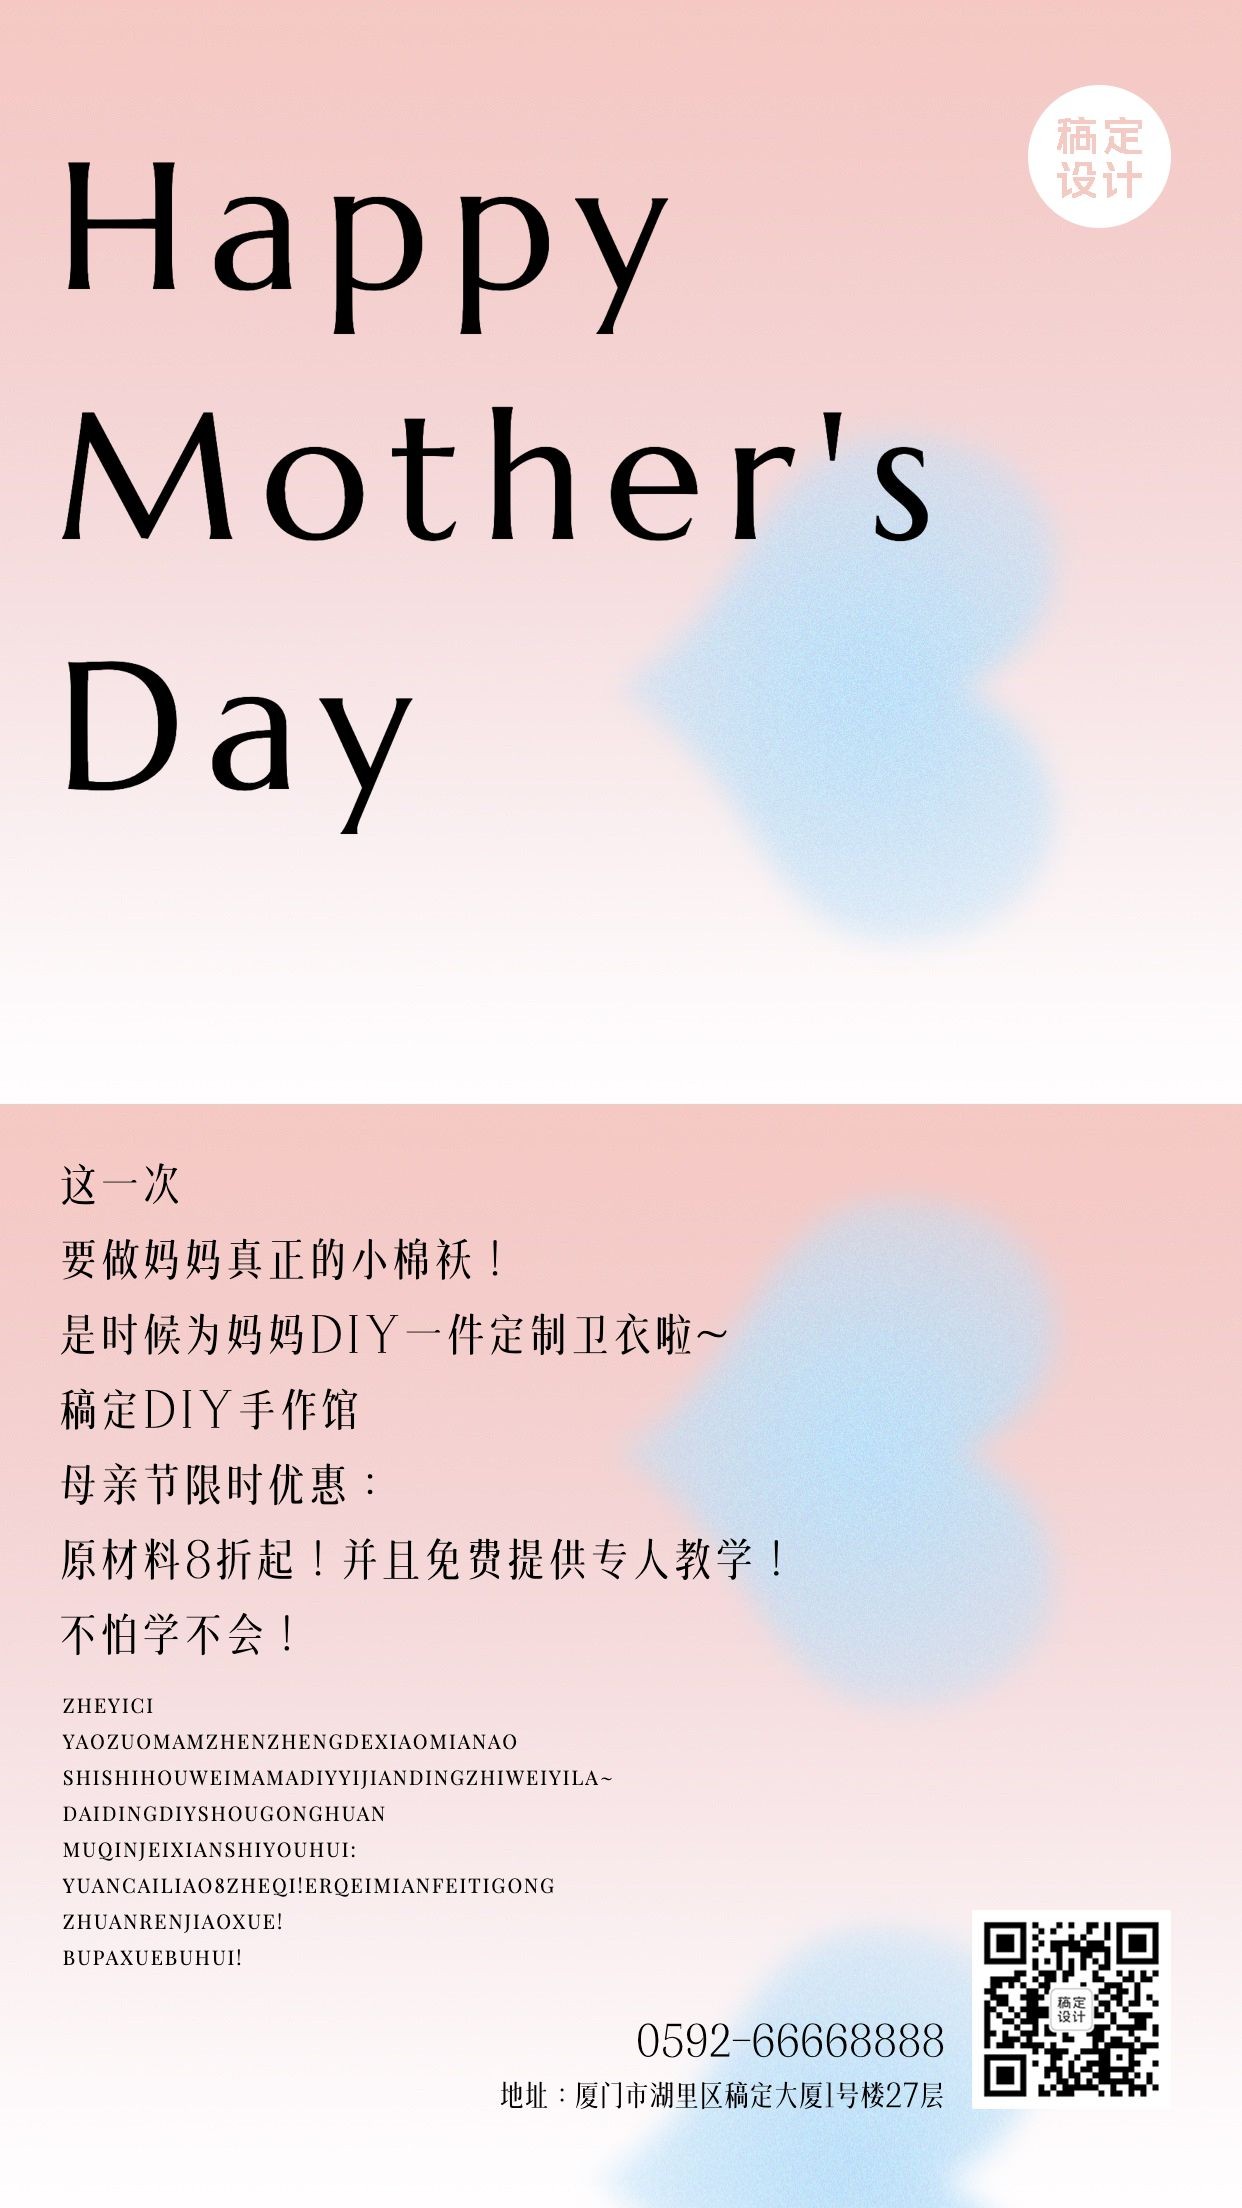 母亲节花艺贺卡手工坊节日营销宣传海报预览效果